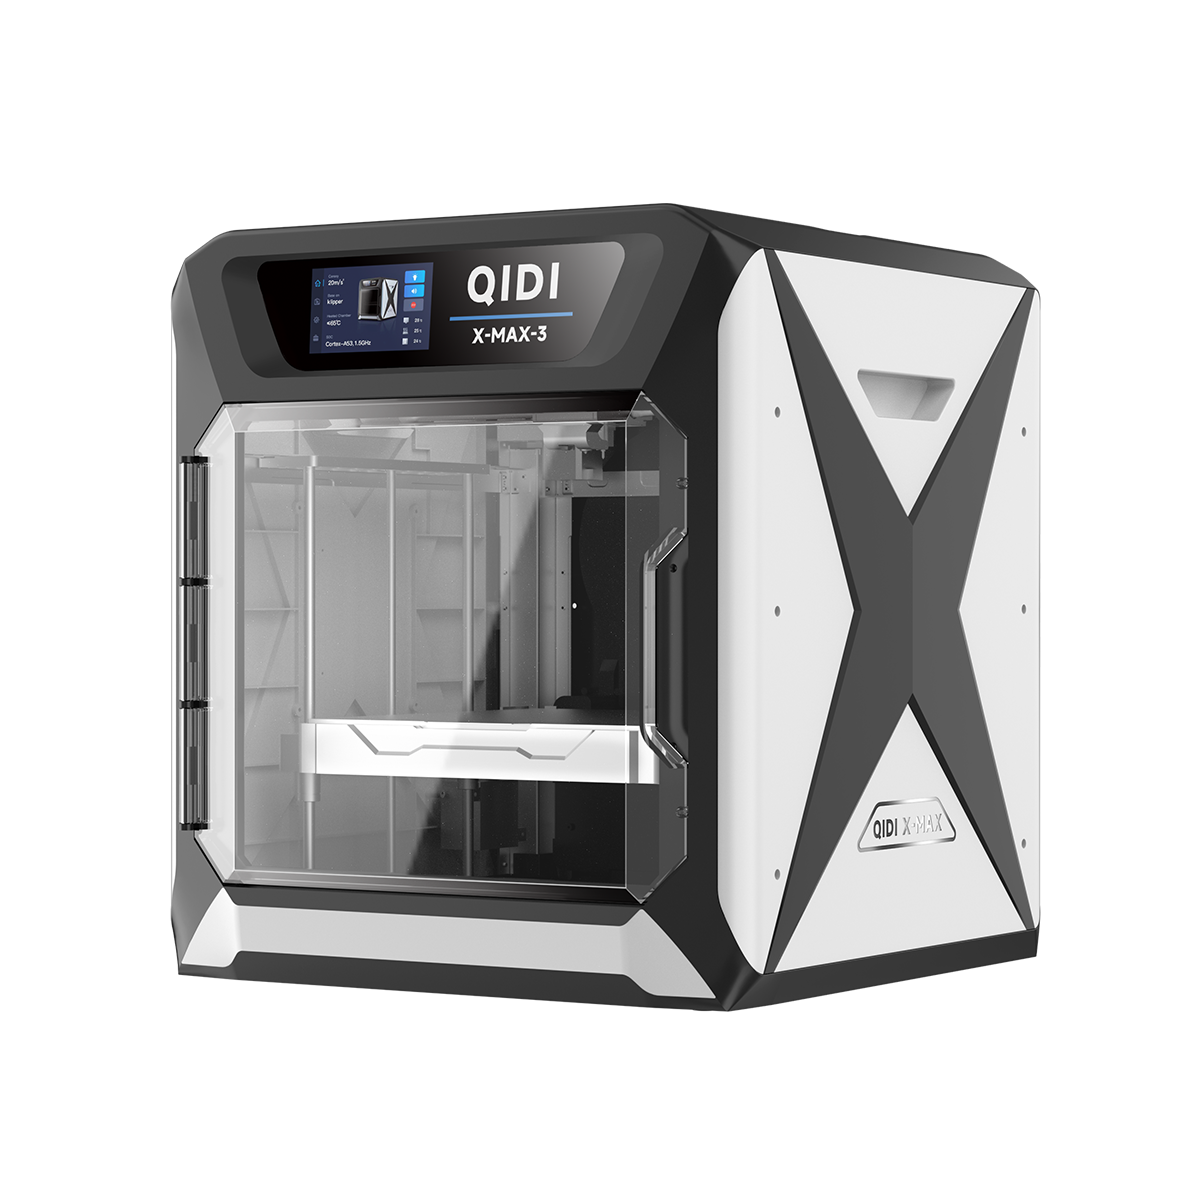 [Qidi X-CF Pro, speziell für den Druck von Kohlefaser und Nylon entwickelt] - [QIDI Online Shop DE]